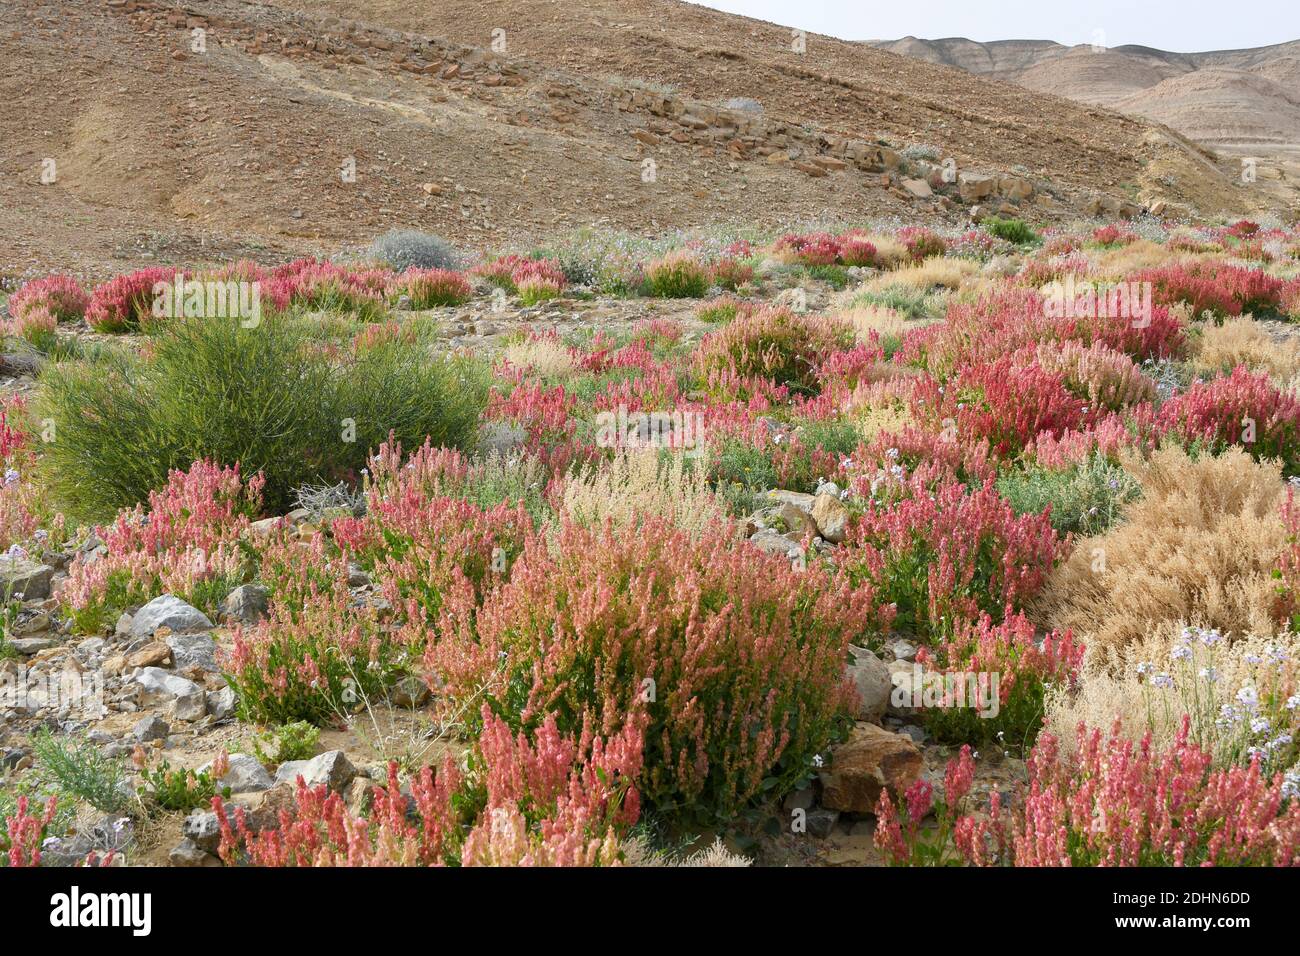 L'ostréiade nouée (Rumex cyprius syn Rumex roseus). Après une rare saison des pluies dans le désert du Néguev, et Israël en général, une abondance de fleurs sauvages sp Banque D'Images